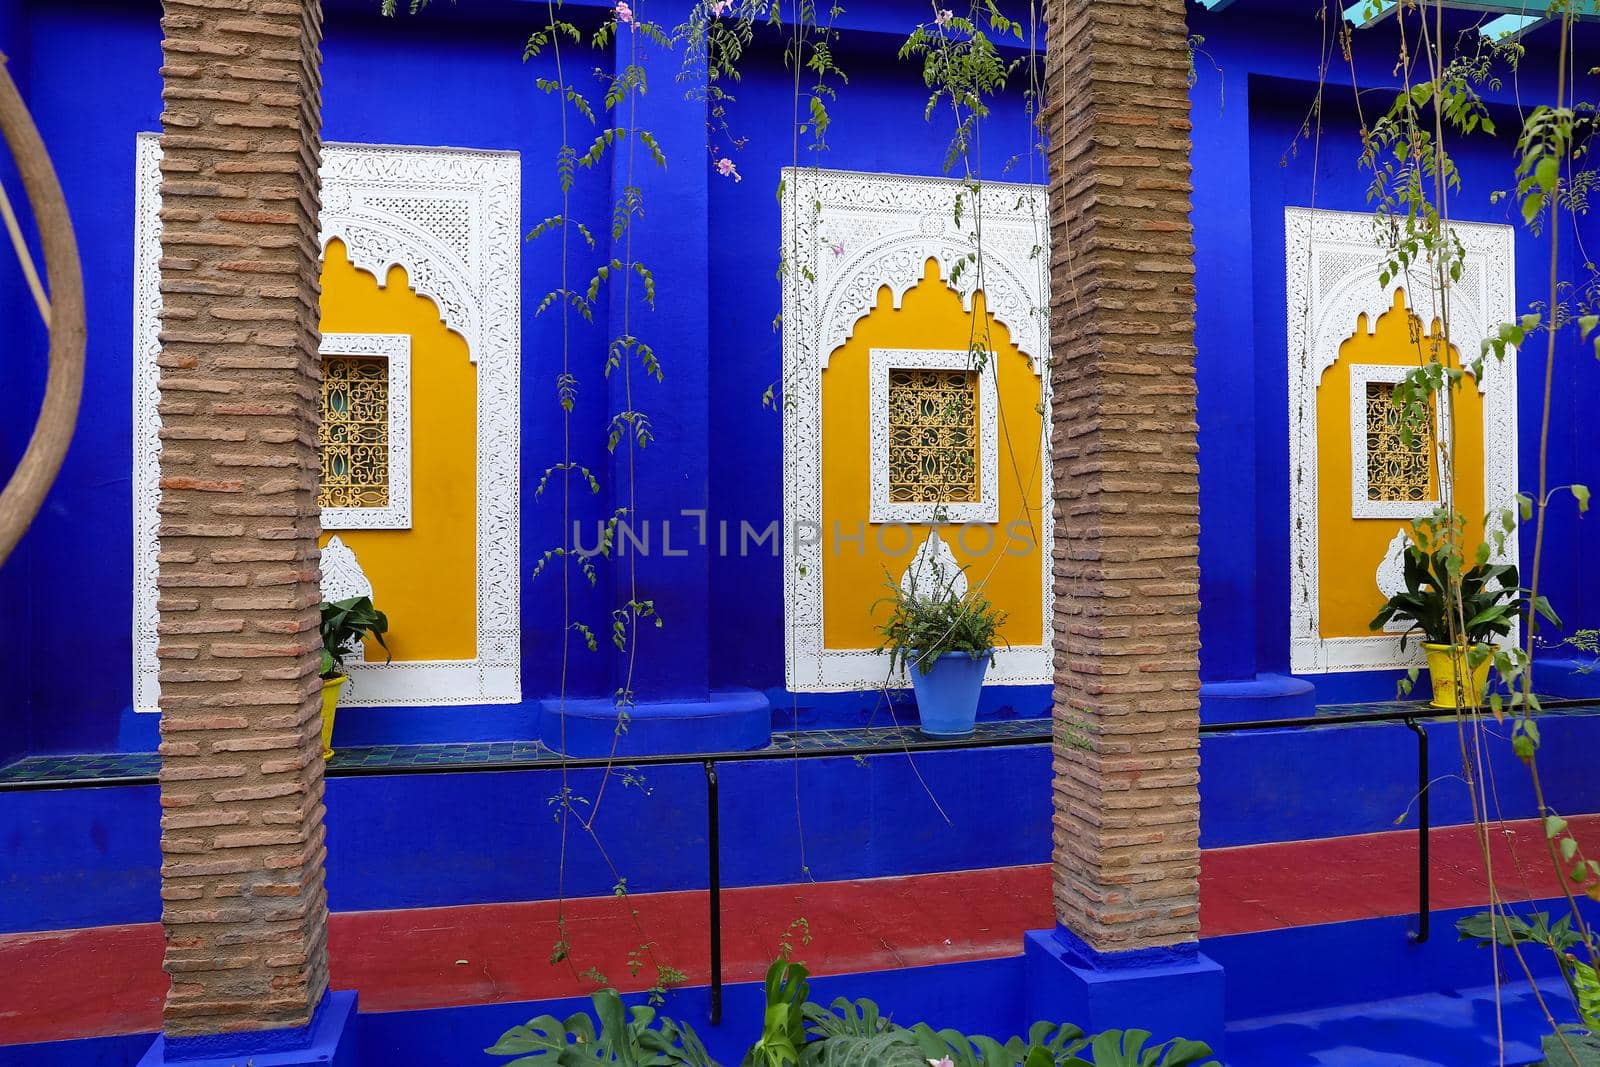 Blue Villa House in Majorelle Garden in Marrakech City, Morocco